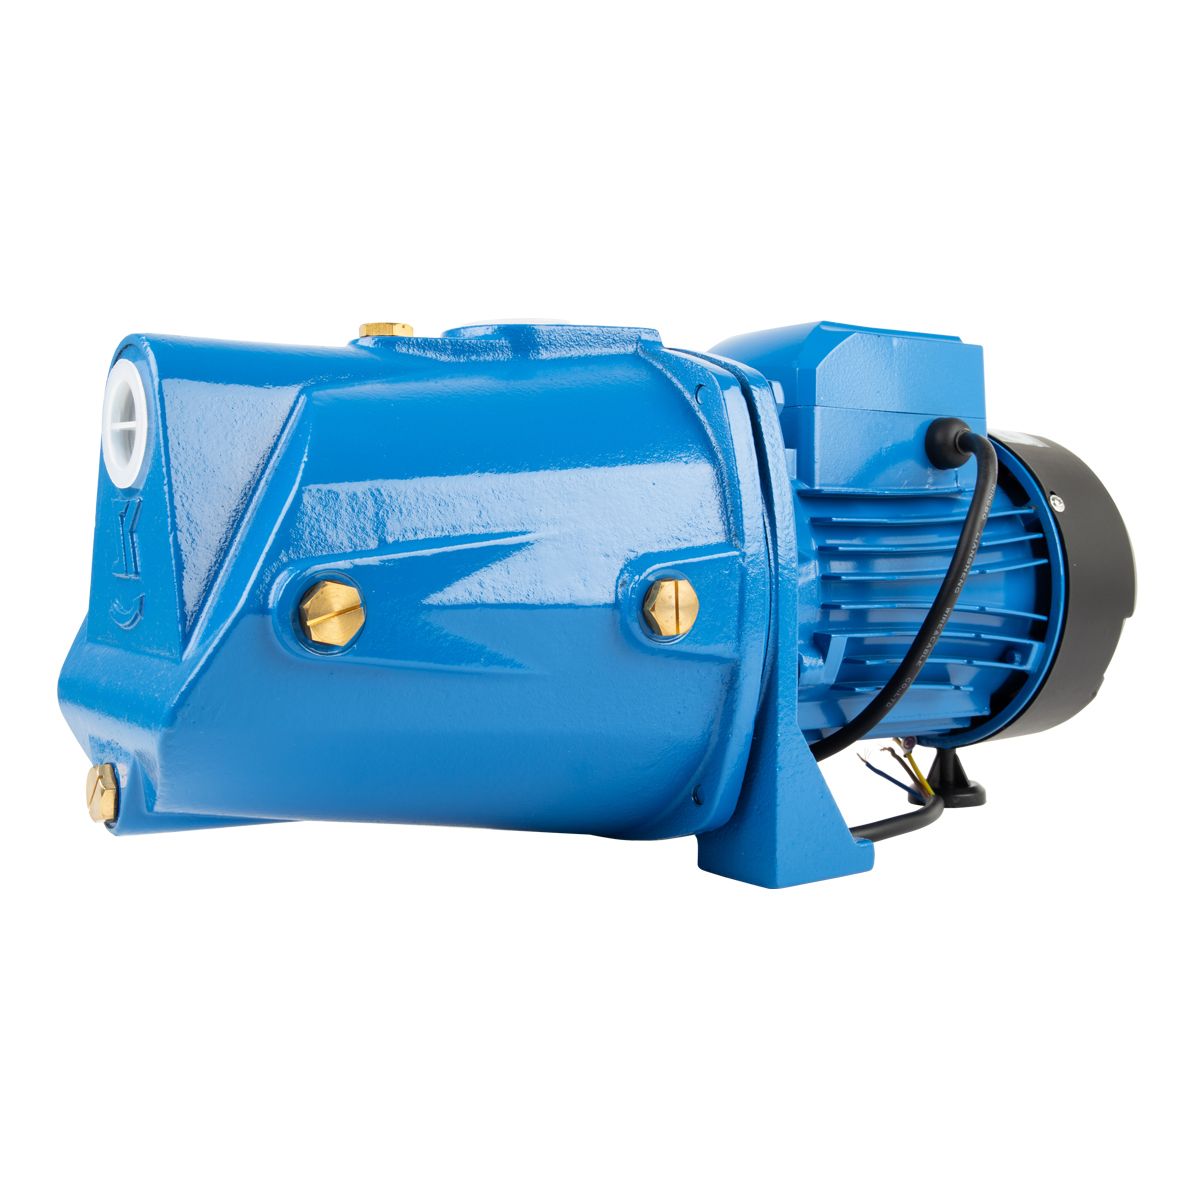 Vane for Pressure Pump Jet Self Priming 0.75kw-Sprinkler, Booster & Irrigation System Pumps-Pascali-diyshop.co.za